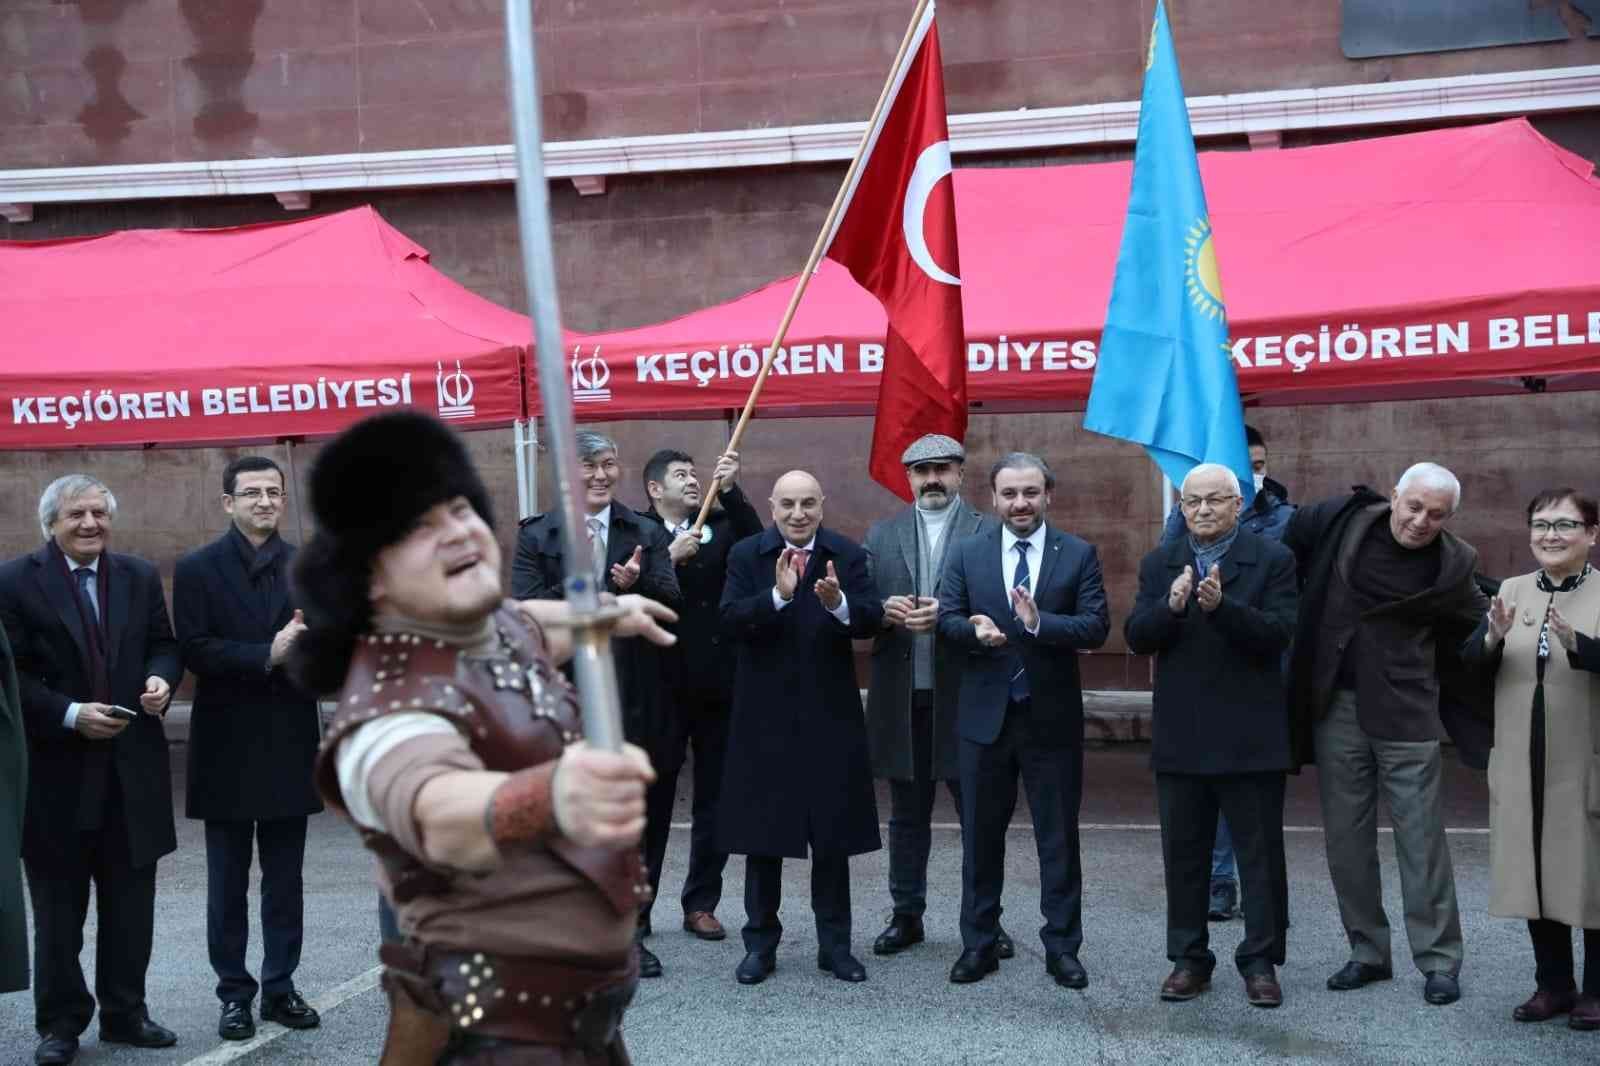 Kazakistan’ın bağımsızlığının 30’uncu yılı Ankara’da kutlandı #ankara